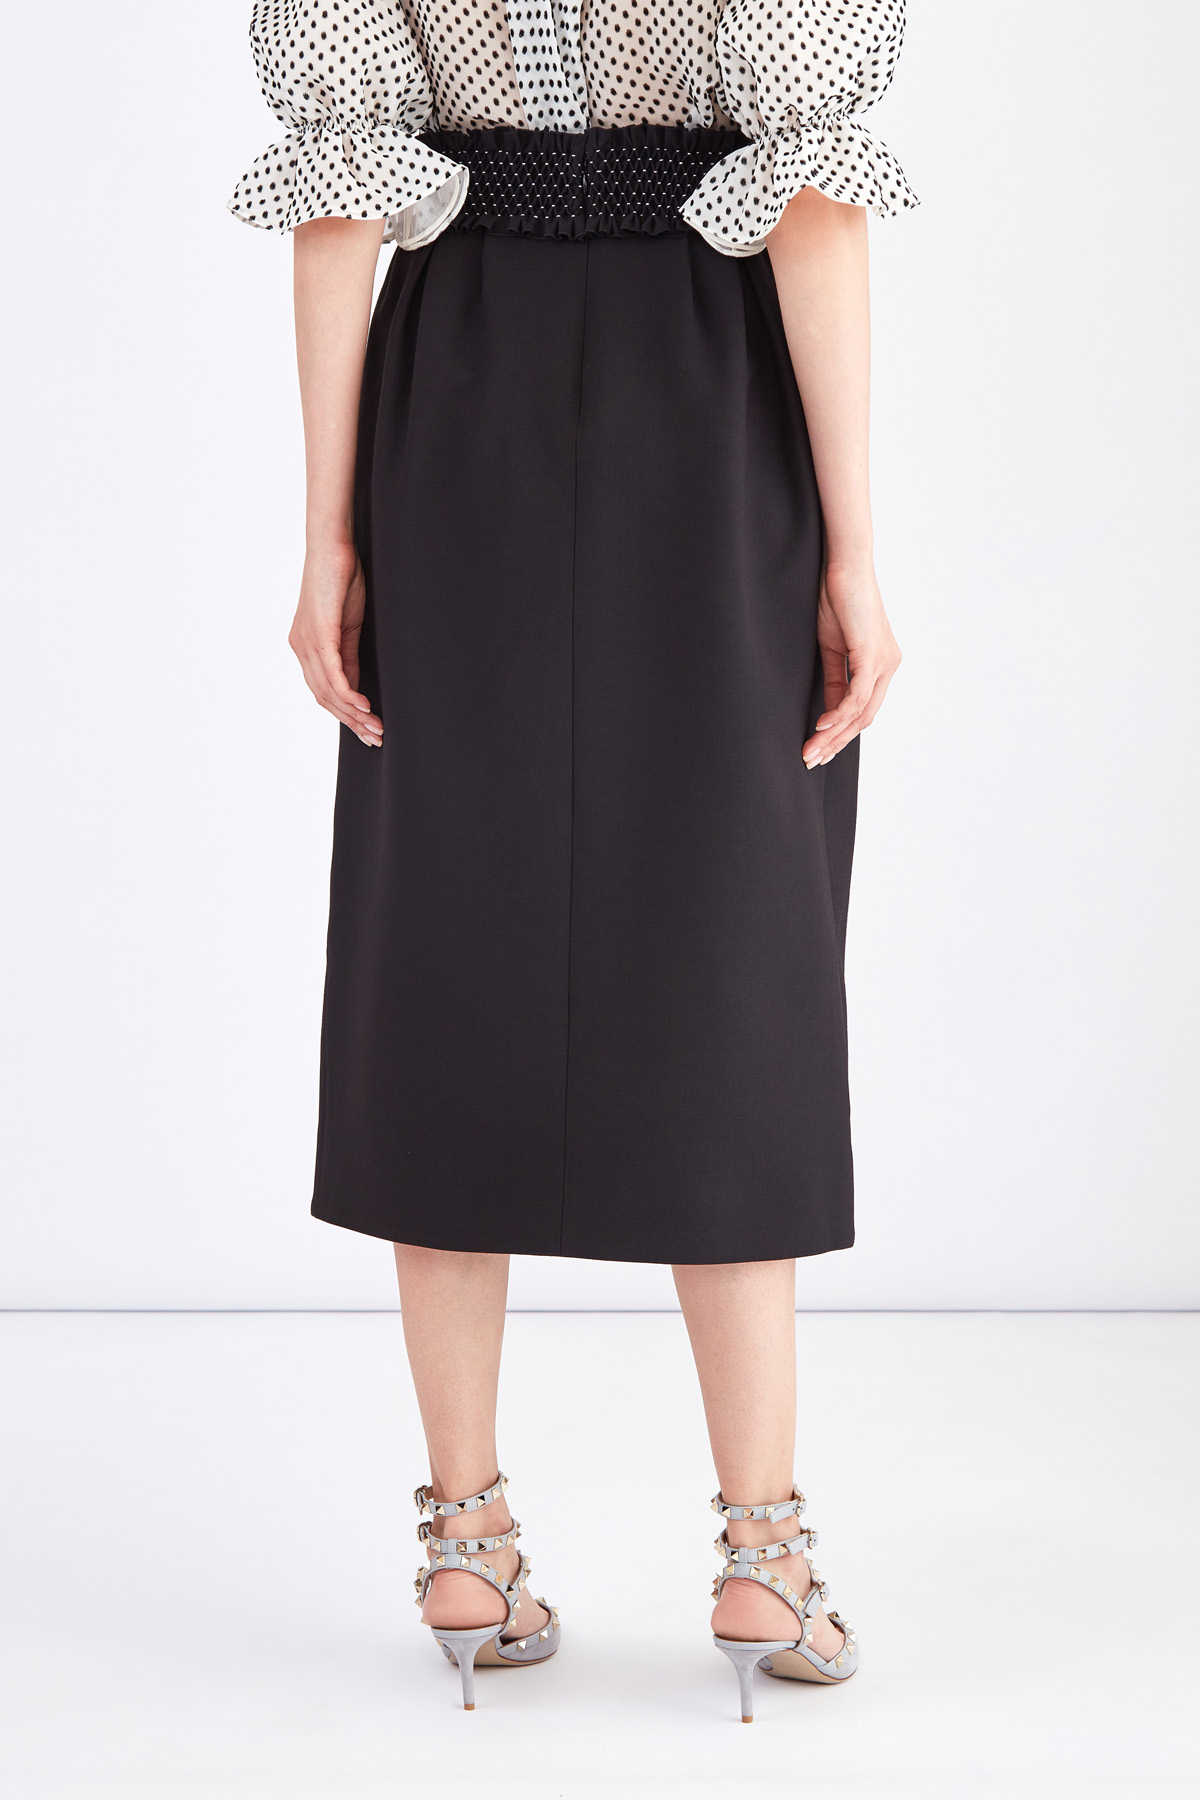 Черная юбка-колокол длины миди с фактурным поясом ручной отделки VALENTINO, цвет черный, размер 42 - фото 4